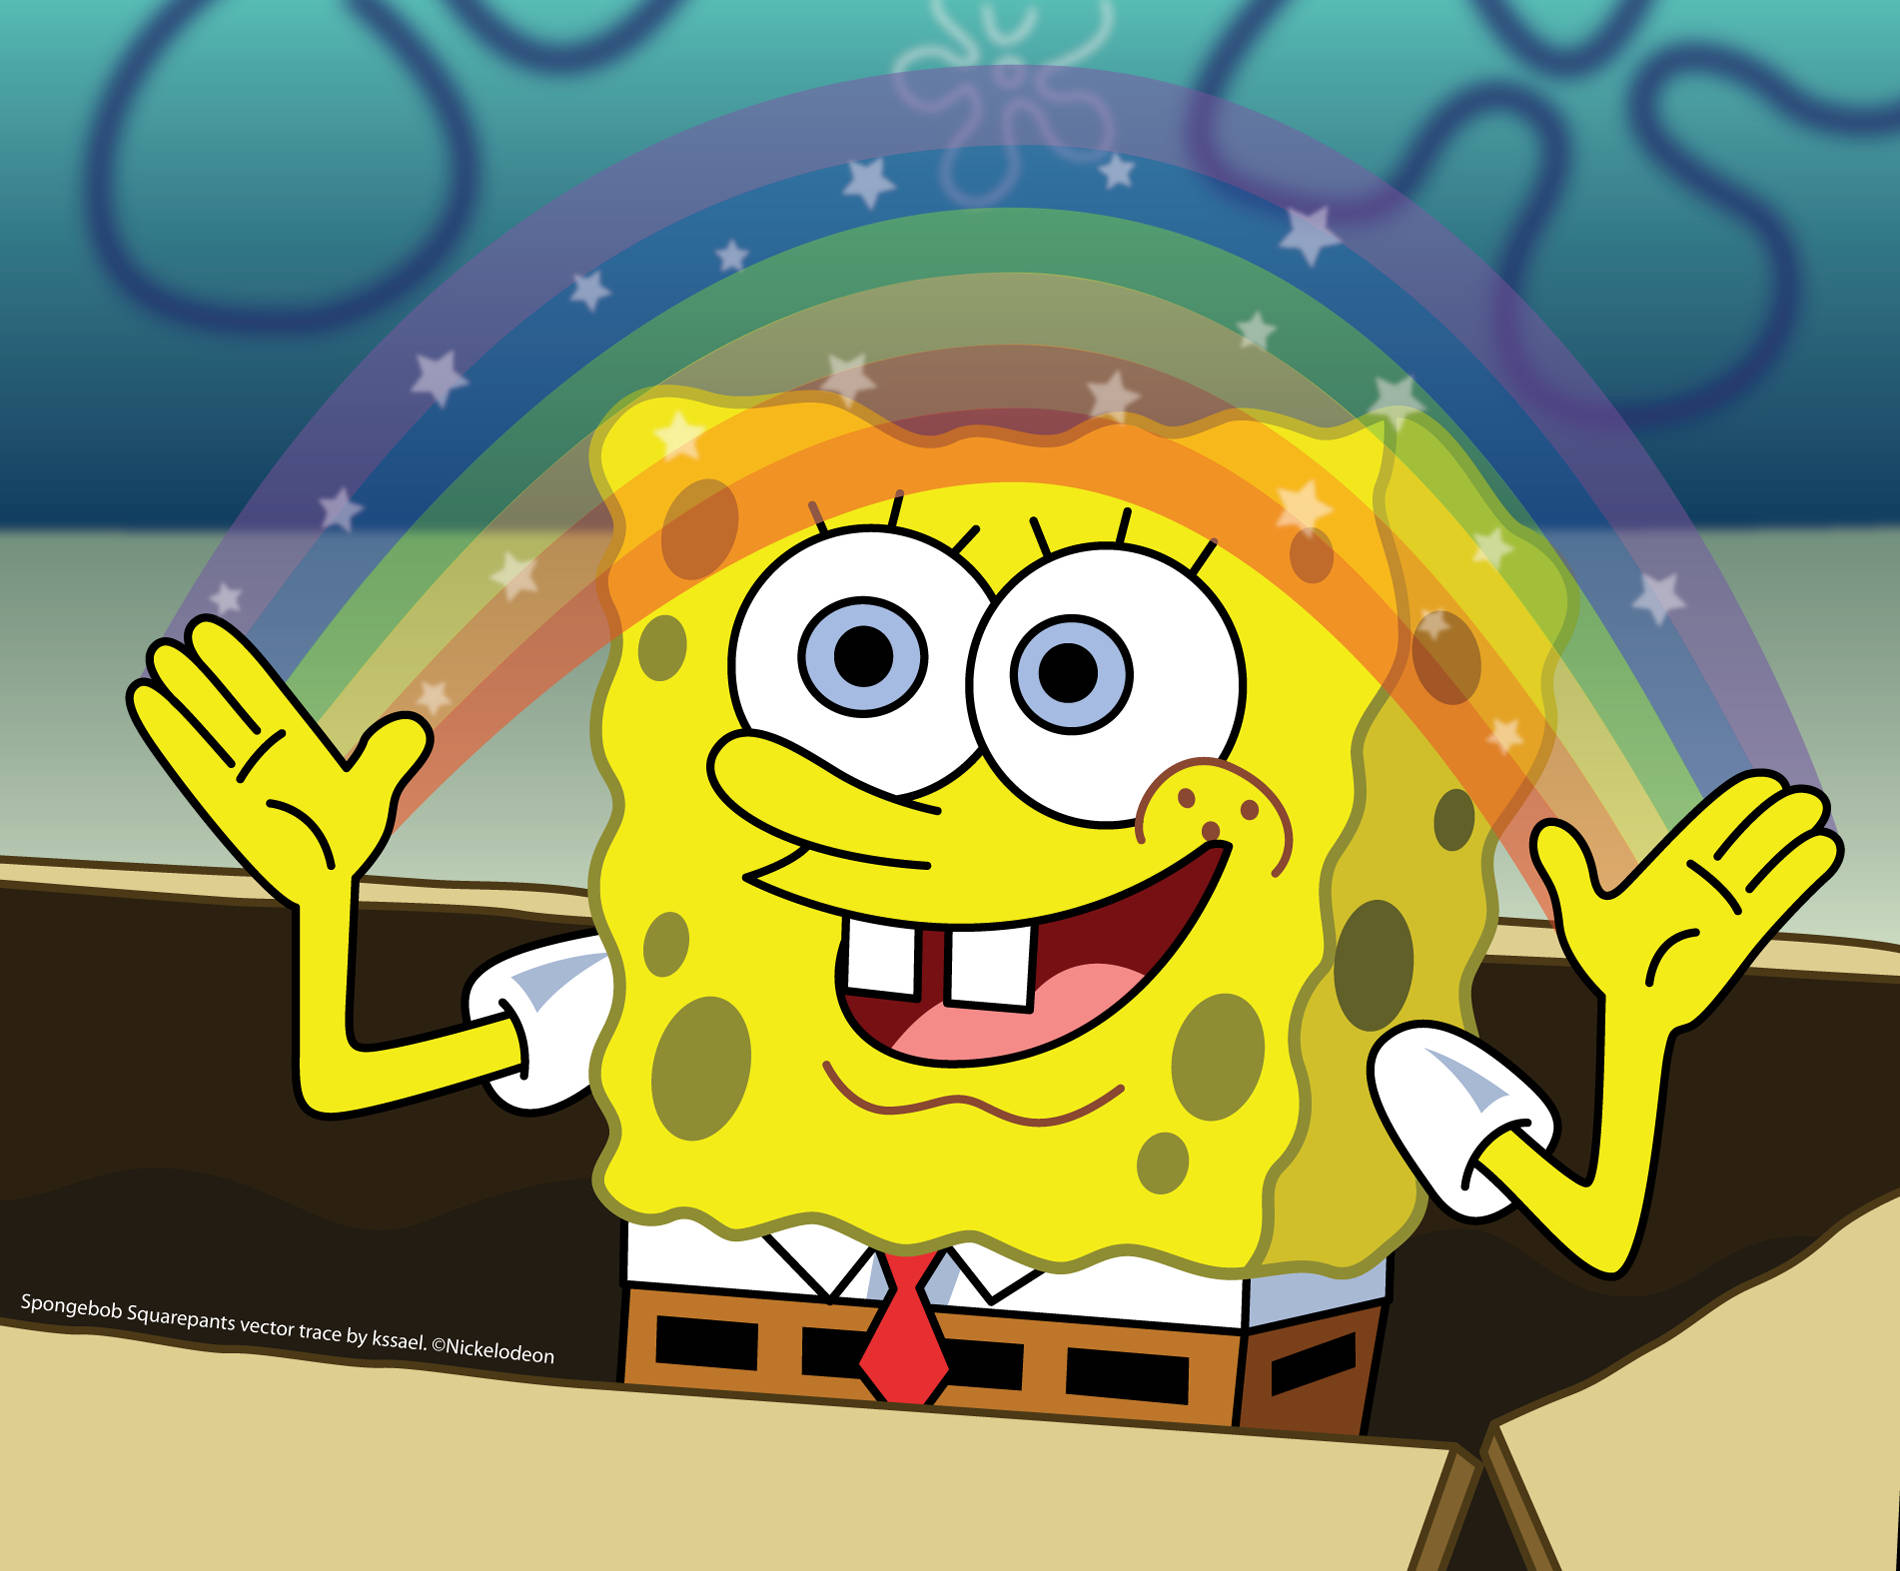 "SpongeBob SquarePants is living his best life under a vibrant rainbow!" Wallpaper